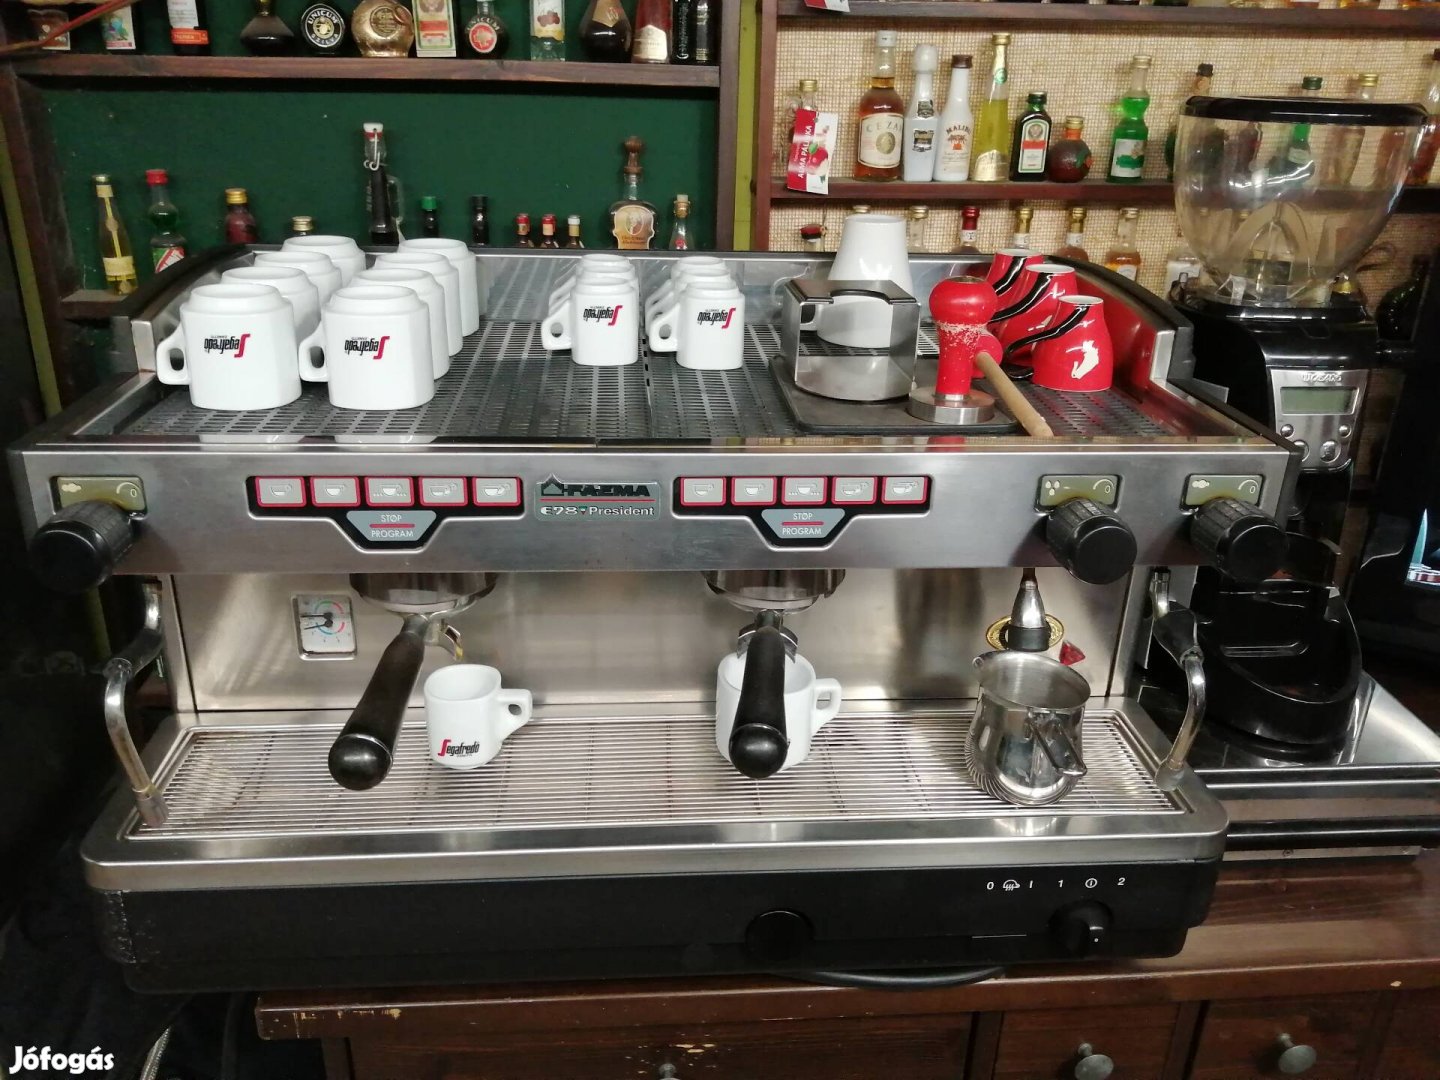 Faema E98 President karos kávégép kávéfőző kávéőrlő presszógép